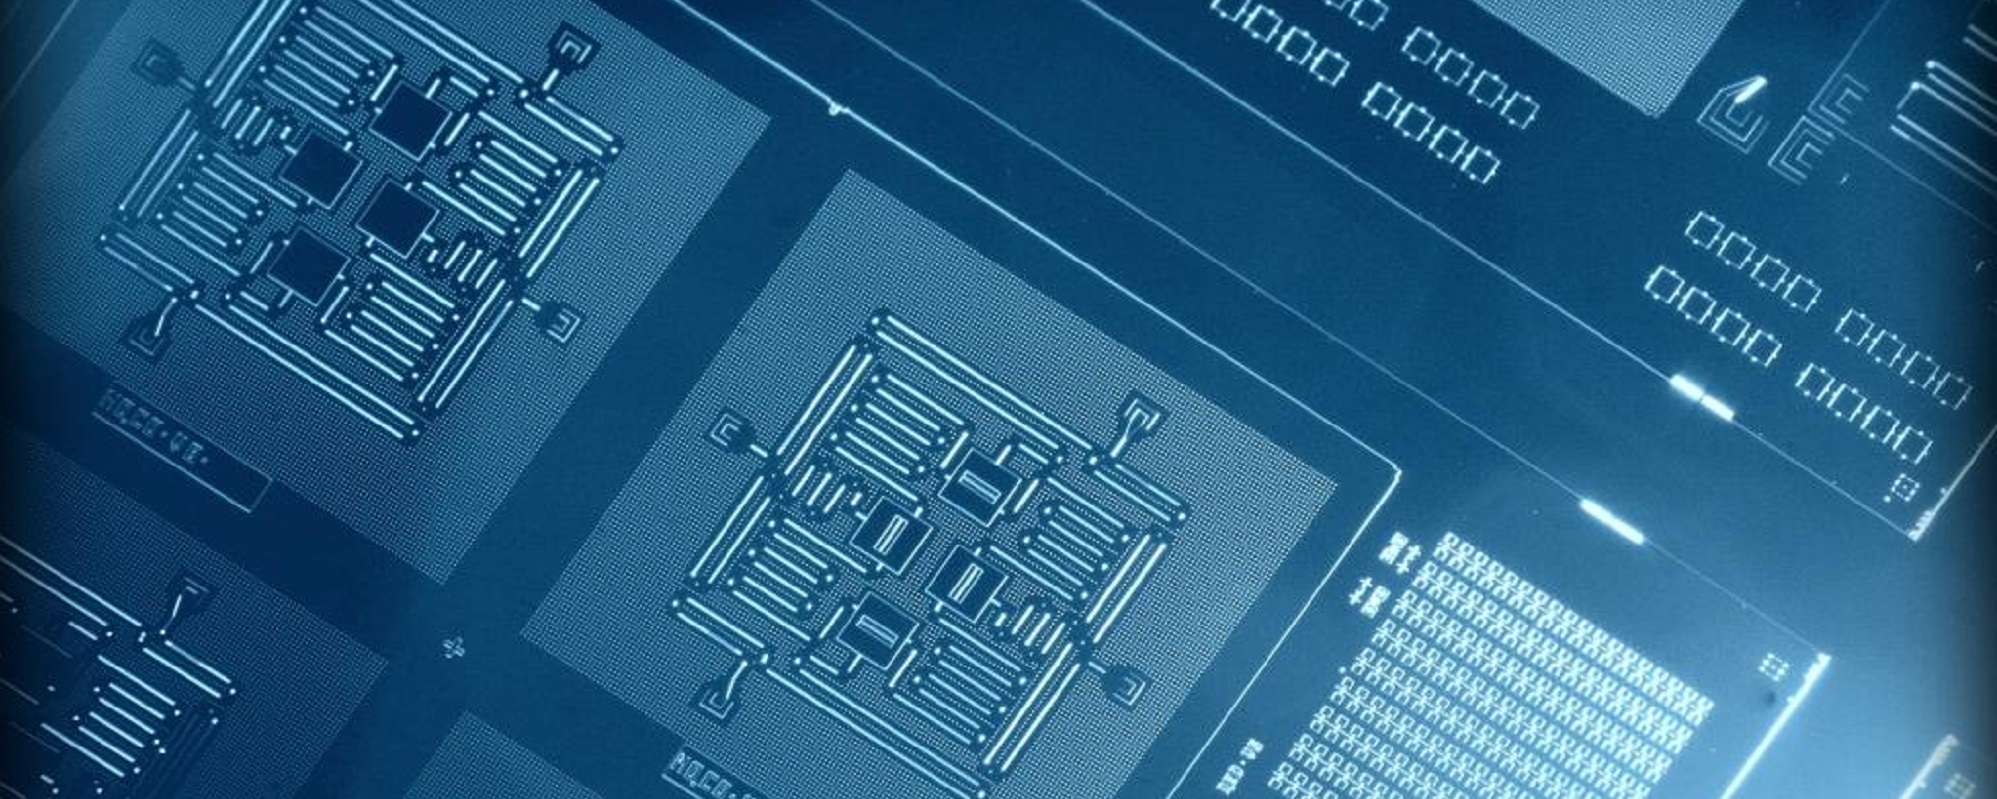 Qubits in IBM's quantum computer